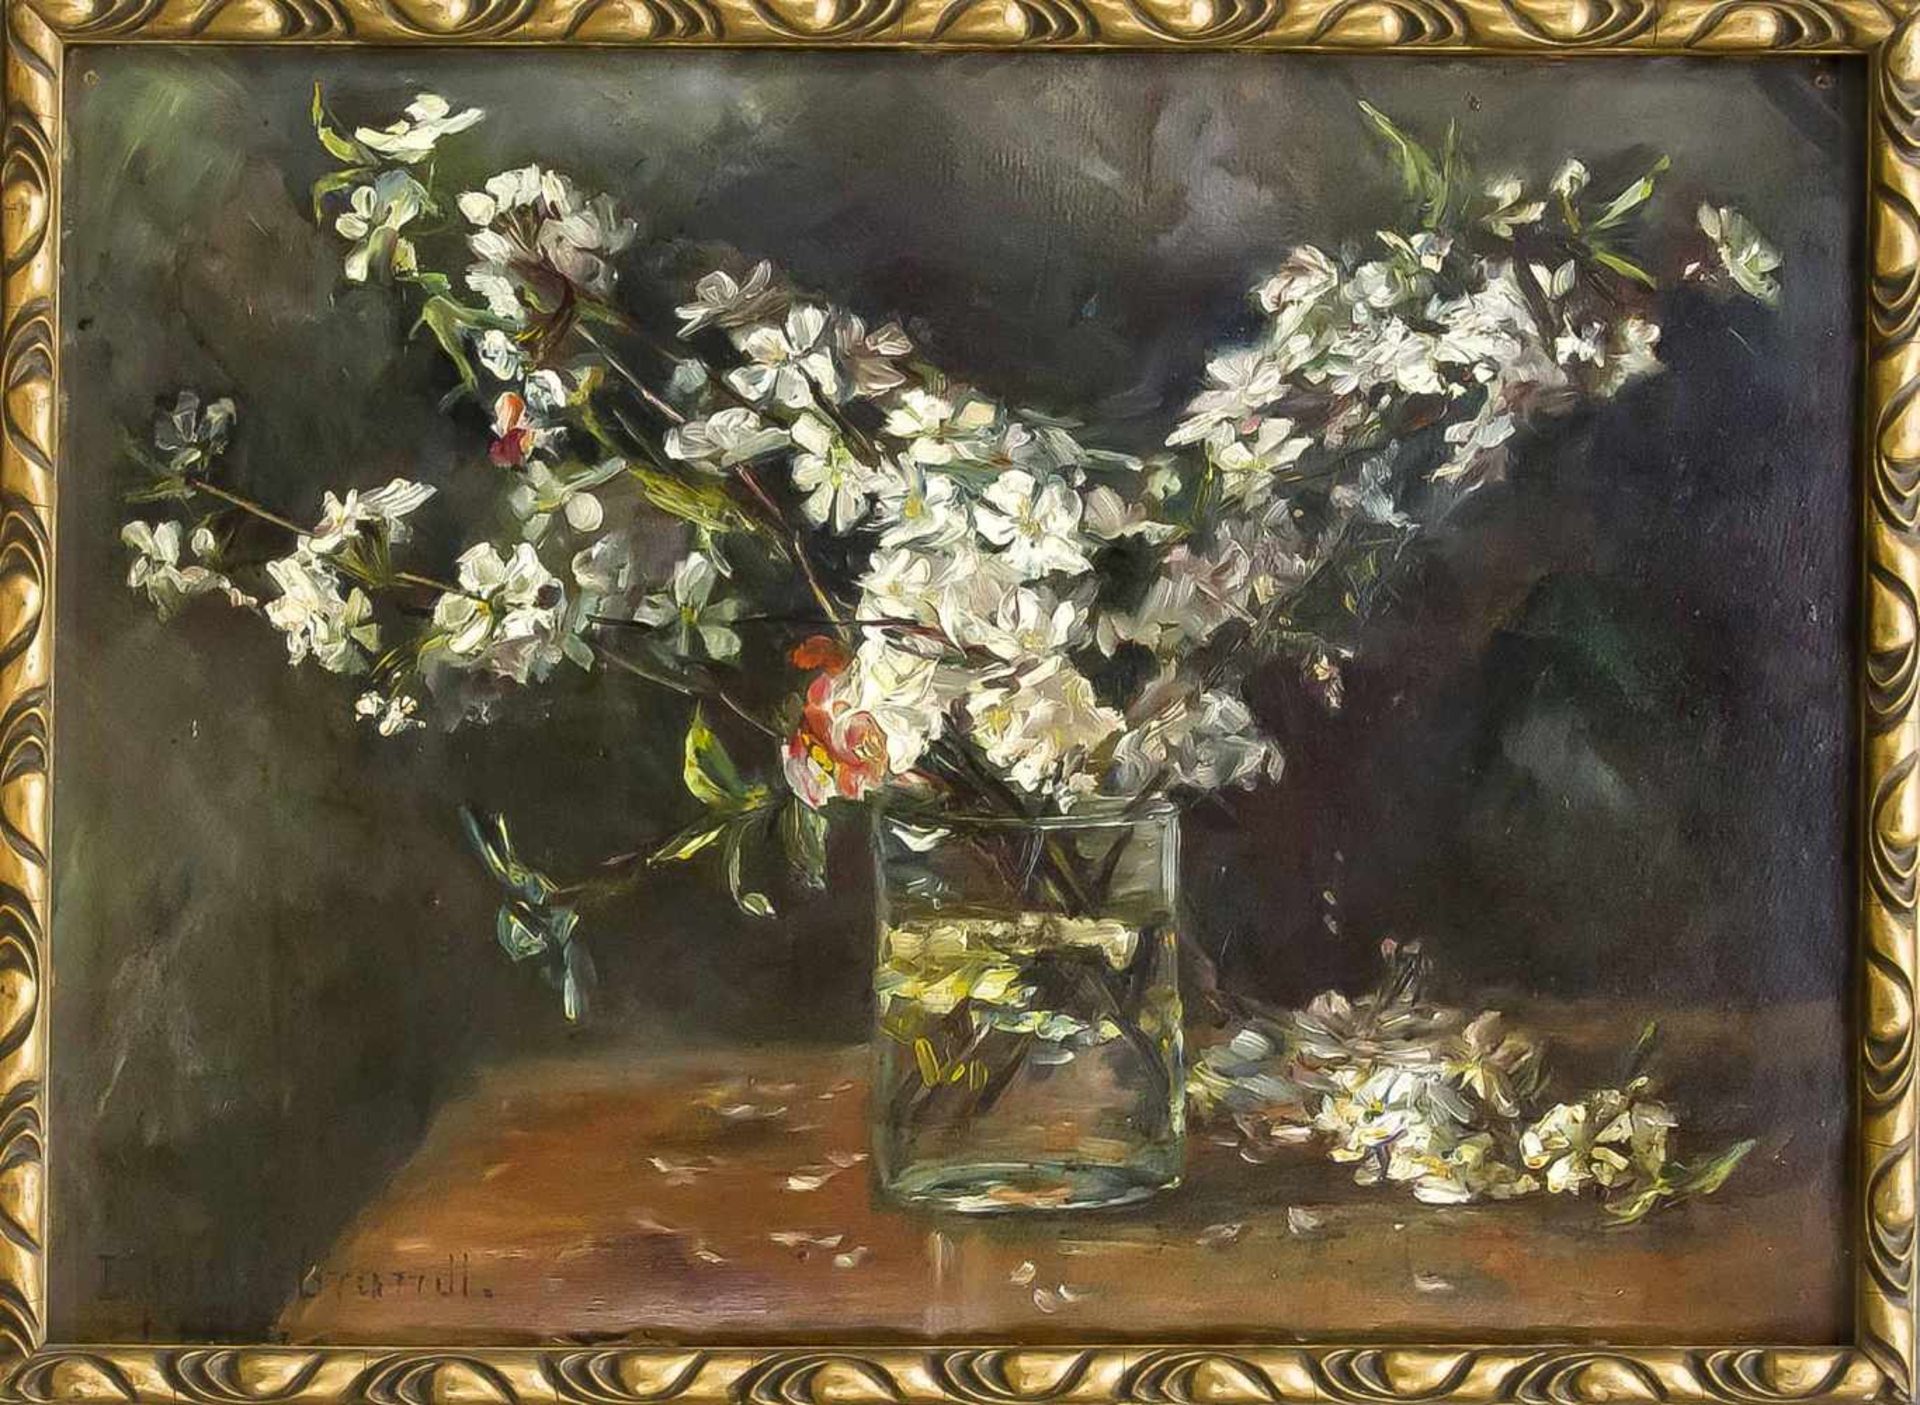 Isa Hildebrandt, Malerin um 1900 in Stolp in Pommern (heutiges Slupsk), Obstblütenzweigein einem